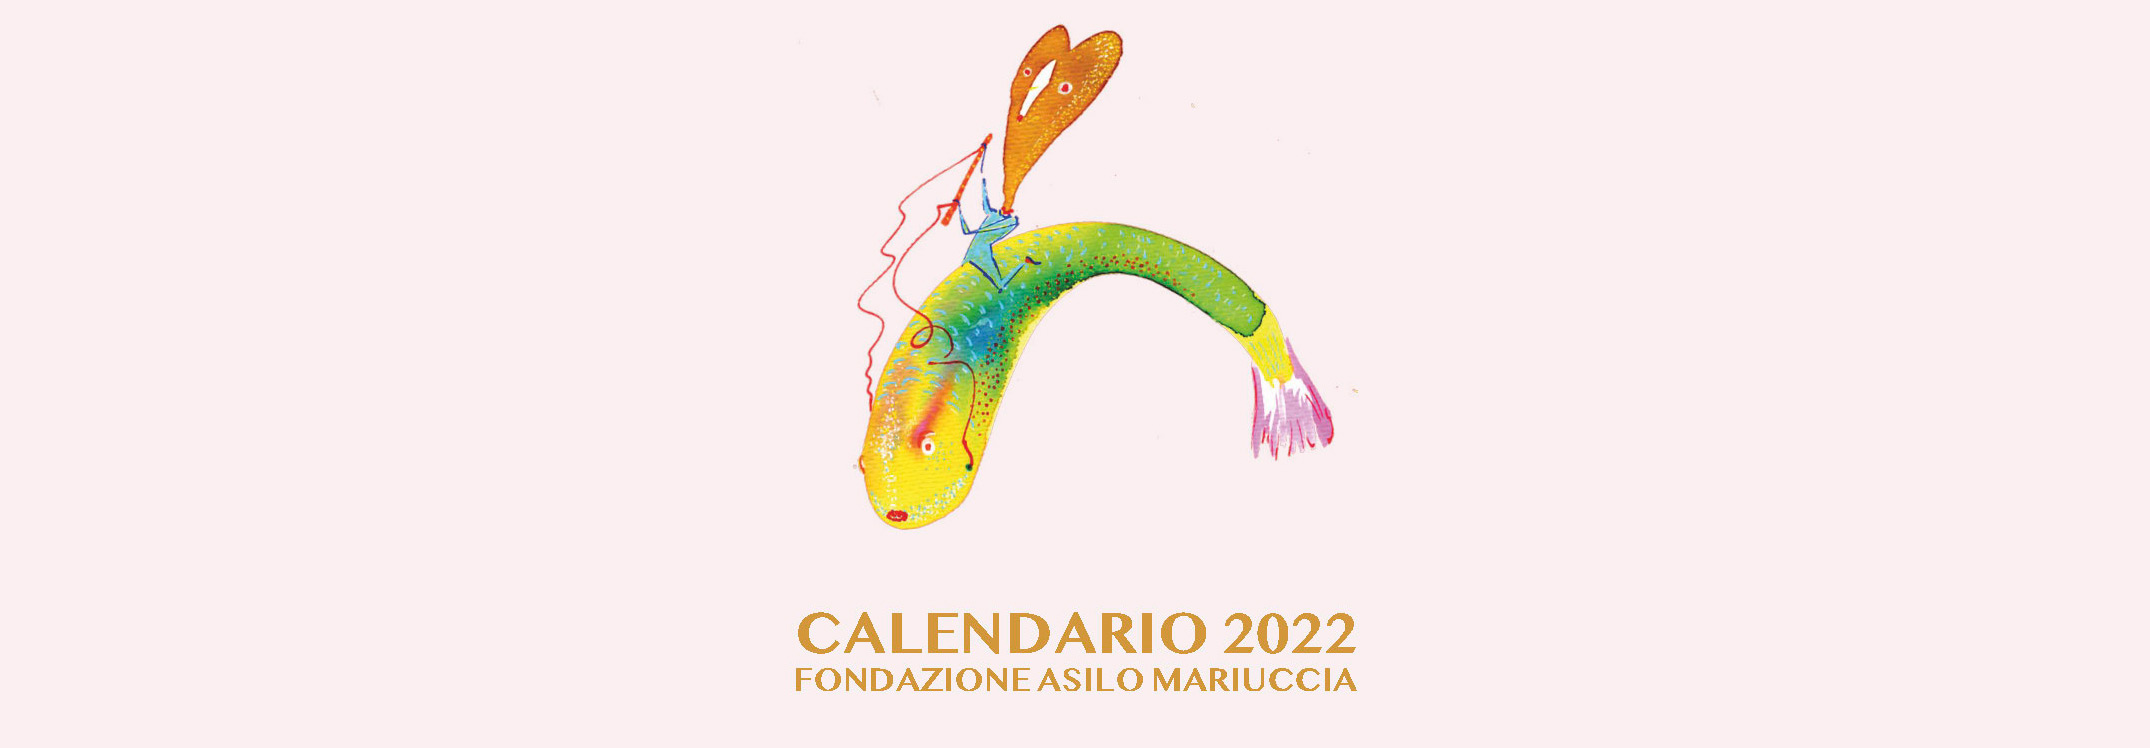 Calendario 2022 della Fondazione Asilo Mariuccia